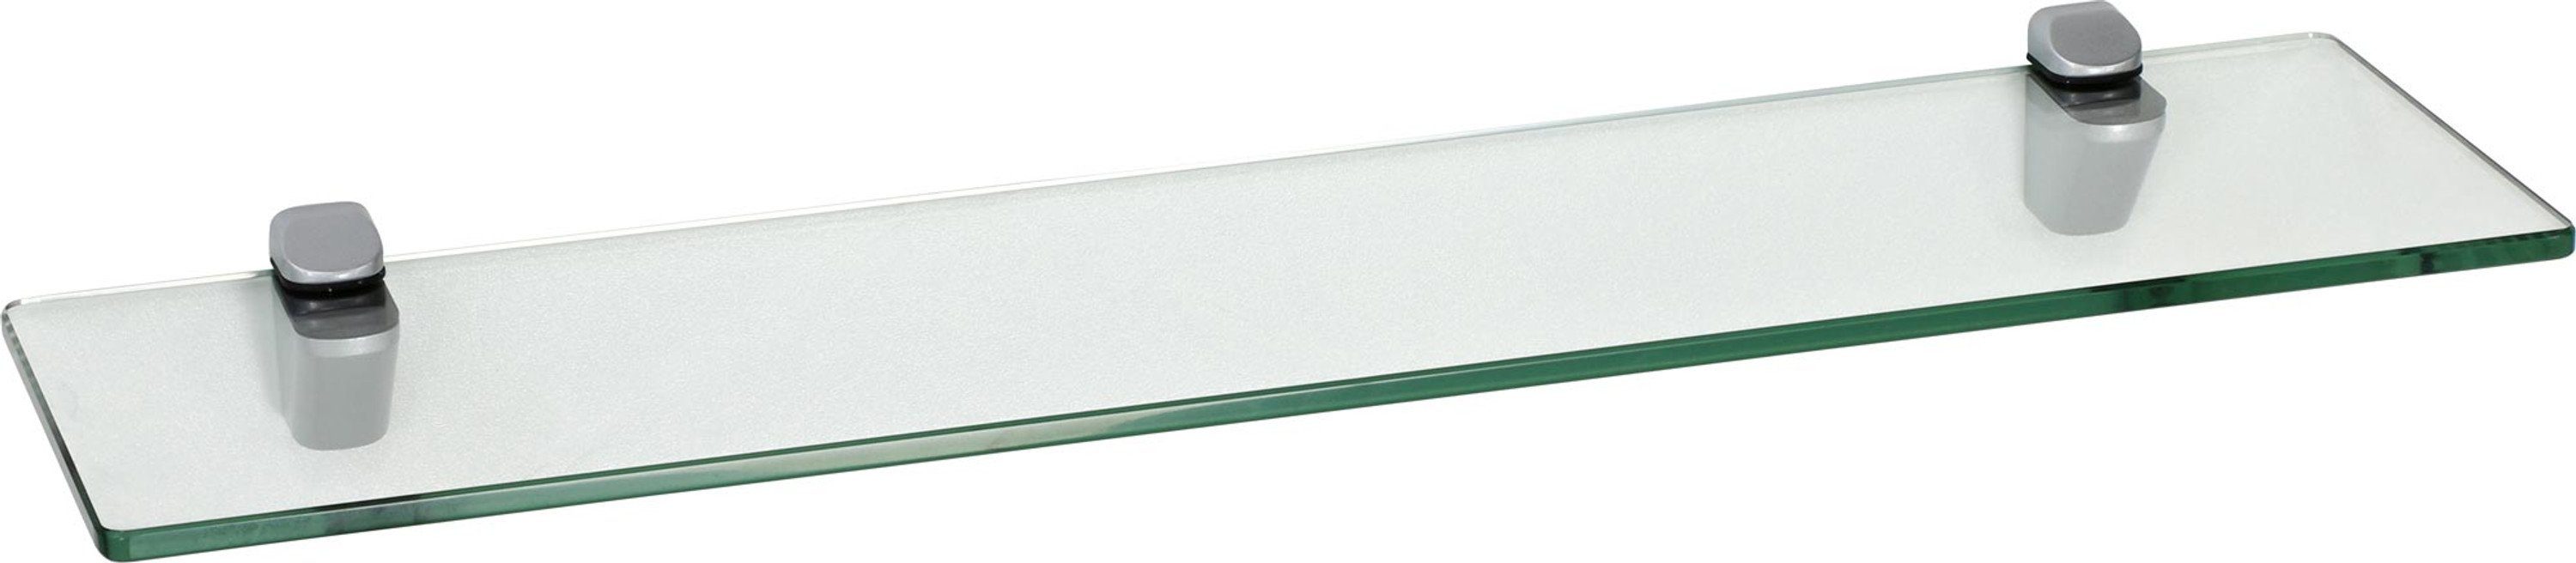 ib style Wandregal Glasregal 8mm eckig klar 40 x 15 cm + Clip CUCALE Silbermatt, ESG-Sicherheitsglas